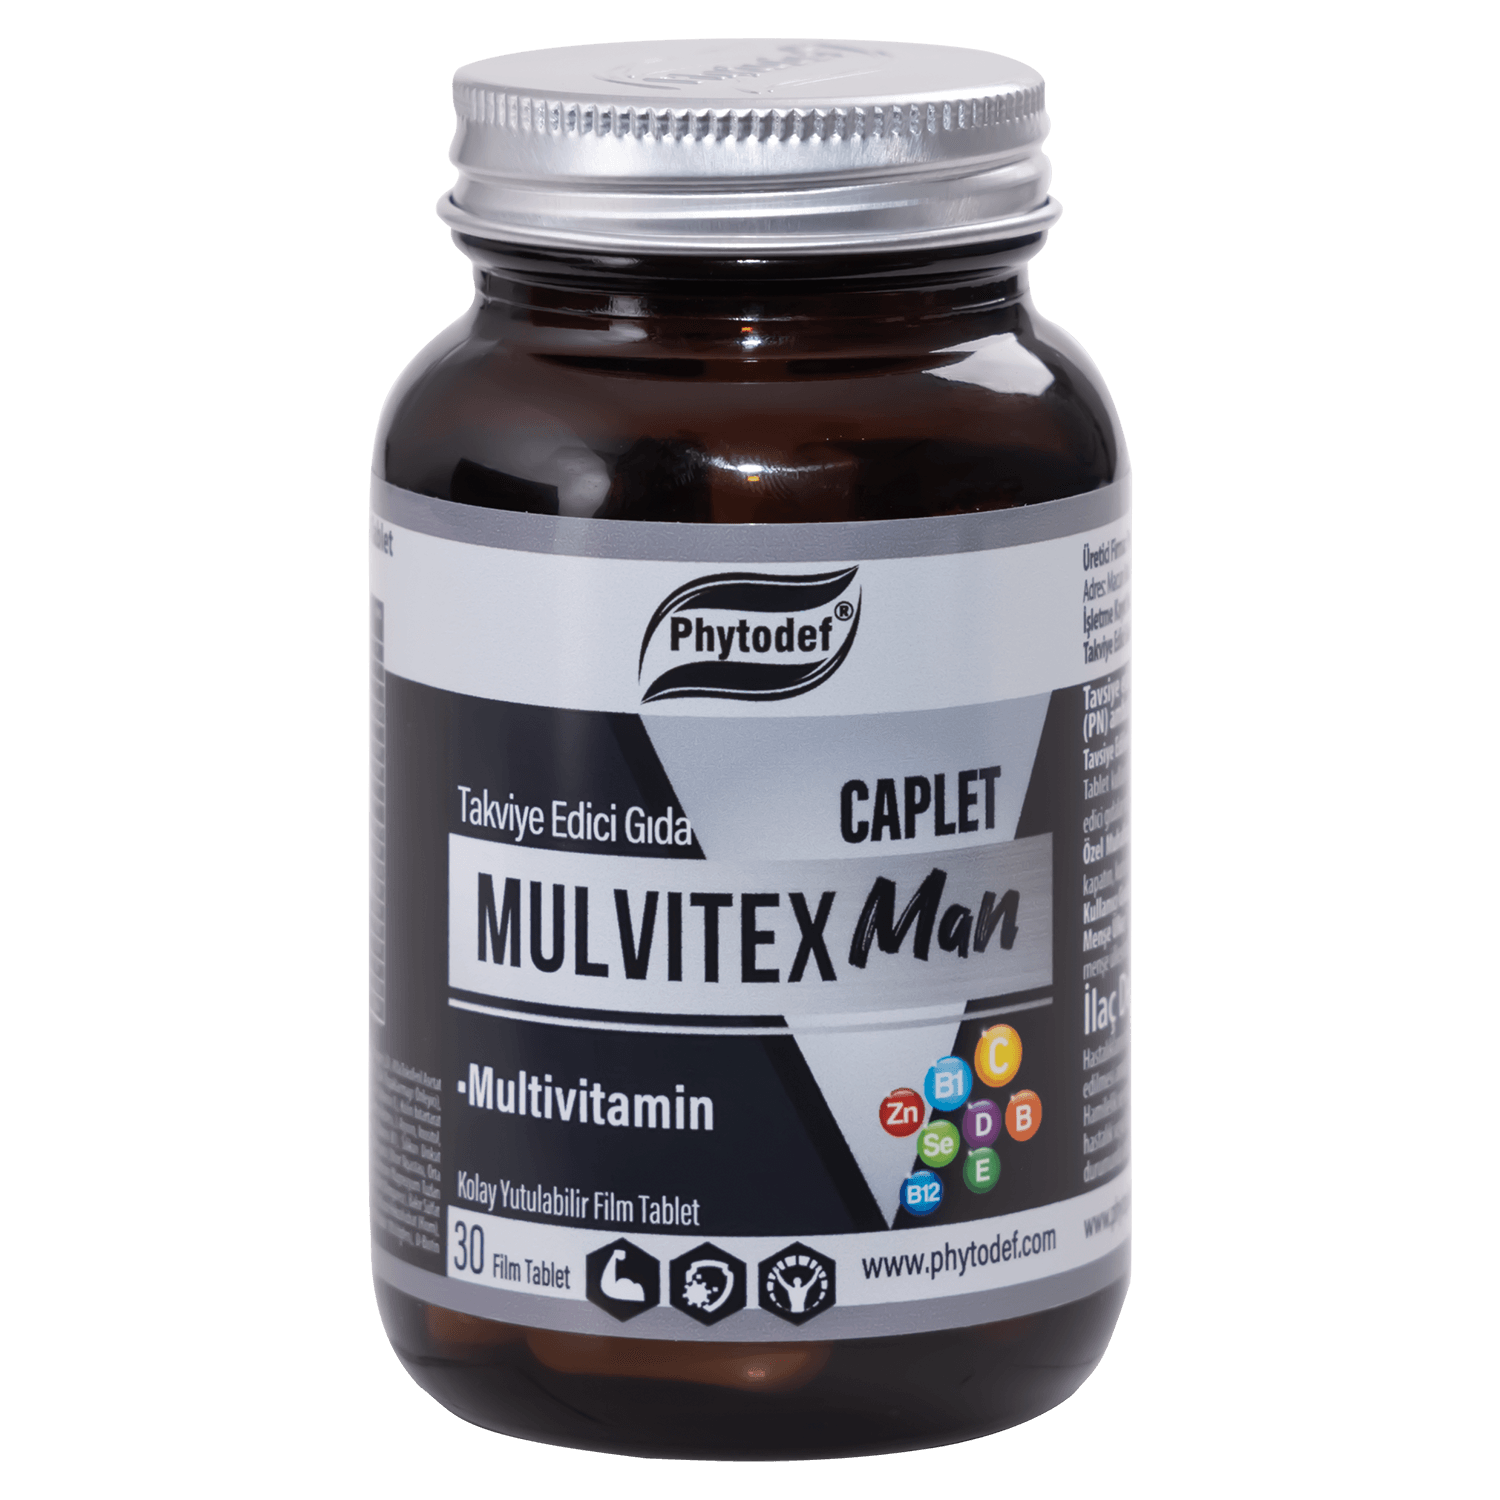  Mulvitex Multivitamin Man - 30 Tablet